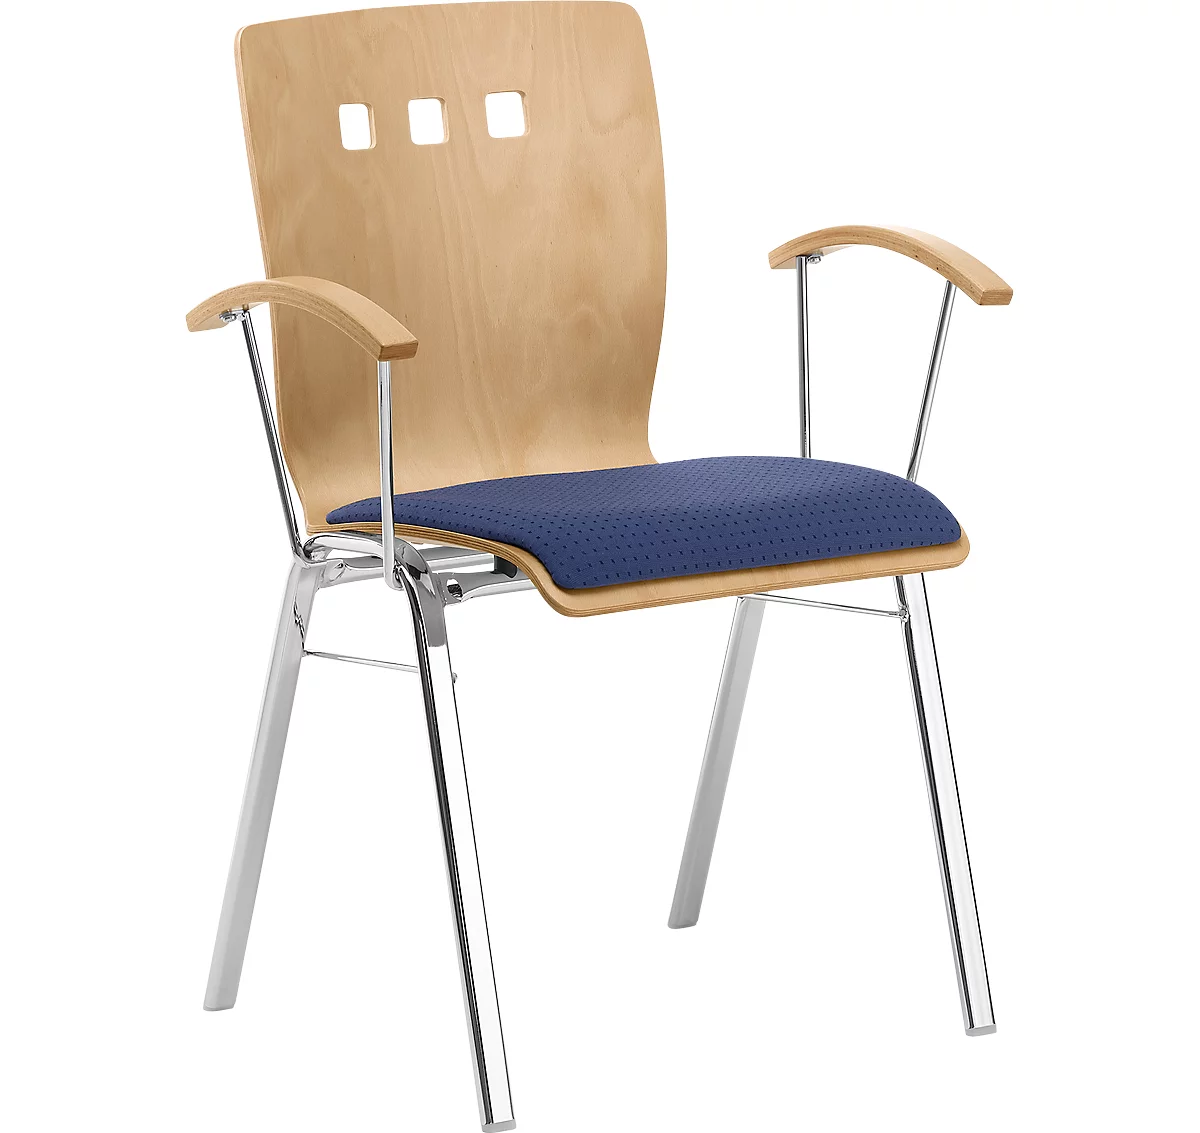 Silla apilable 7450, asiento moldeado, apoyo lumbar, perforaciones de diseño, con reposabrazos, tapizado Point/Trevira CS, azul